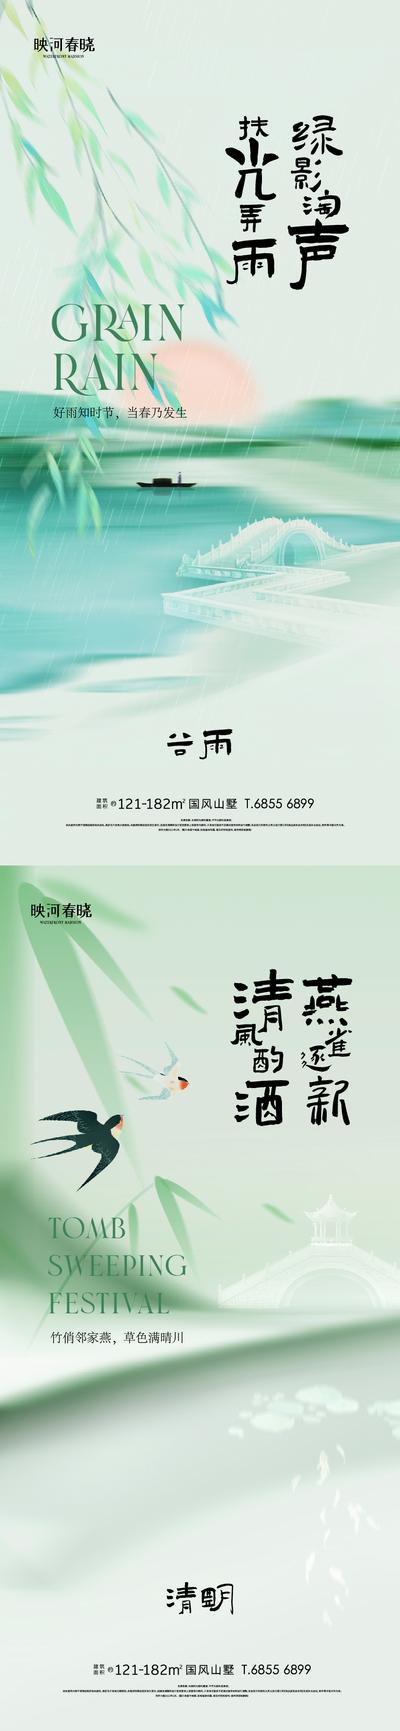 南门网 海报 中国传统节日 清明 二十四节气 谷雨 清新 插画 下雨 燕子 柳叶